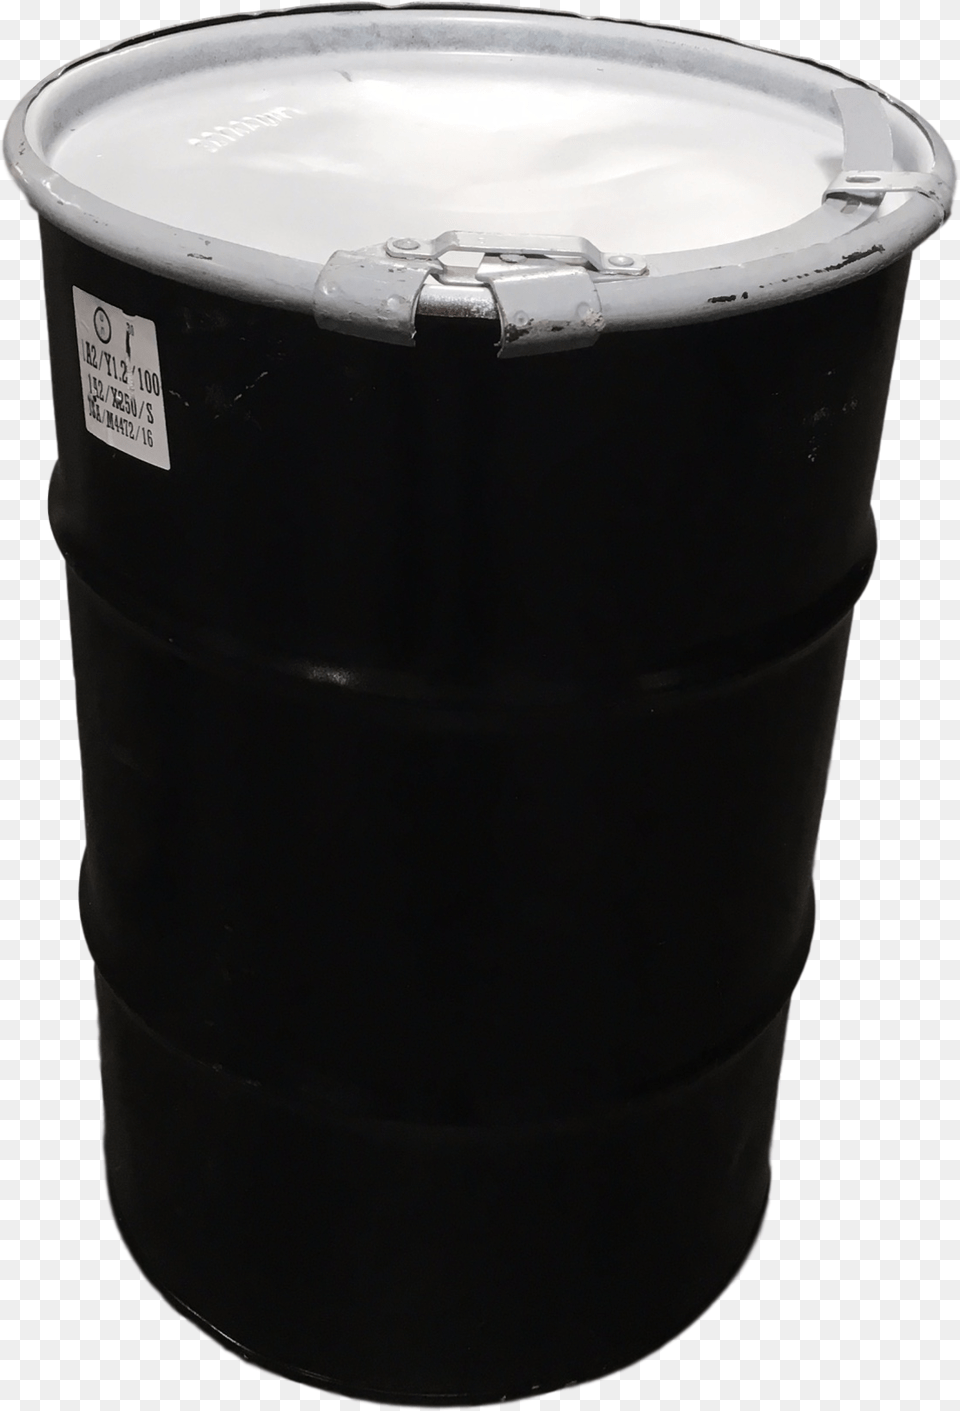 Water Drum, Barrel, Keg, Can, Tin Png Image